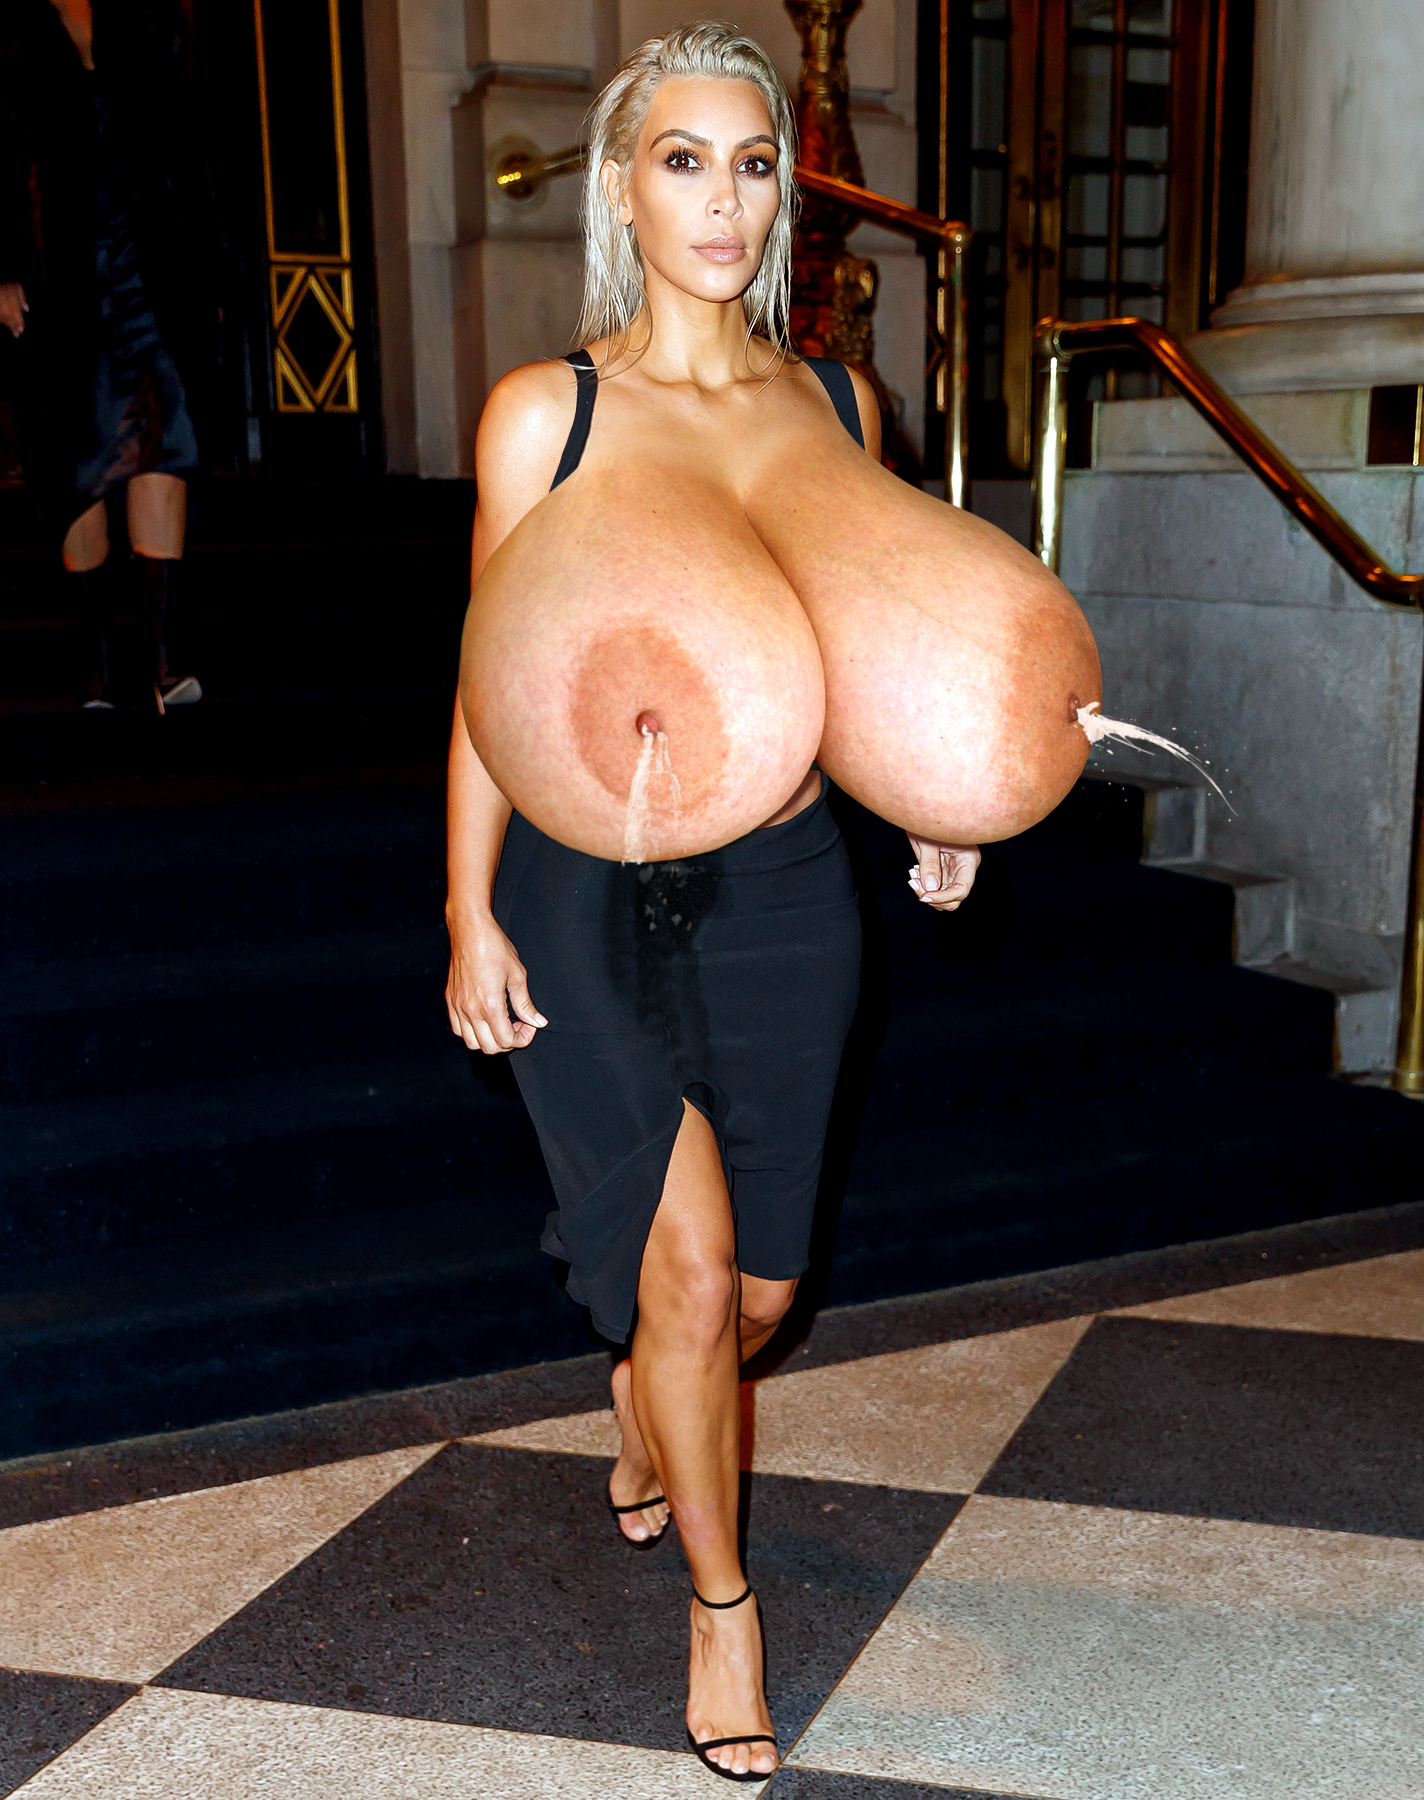 Morphed huge boobs - 🧡 #LillyRoma #sexy #hot #hugeboobs #amazingboobs #nic...